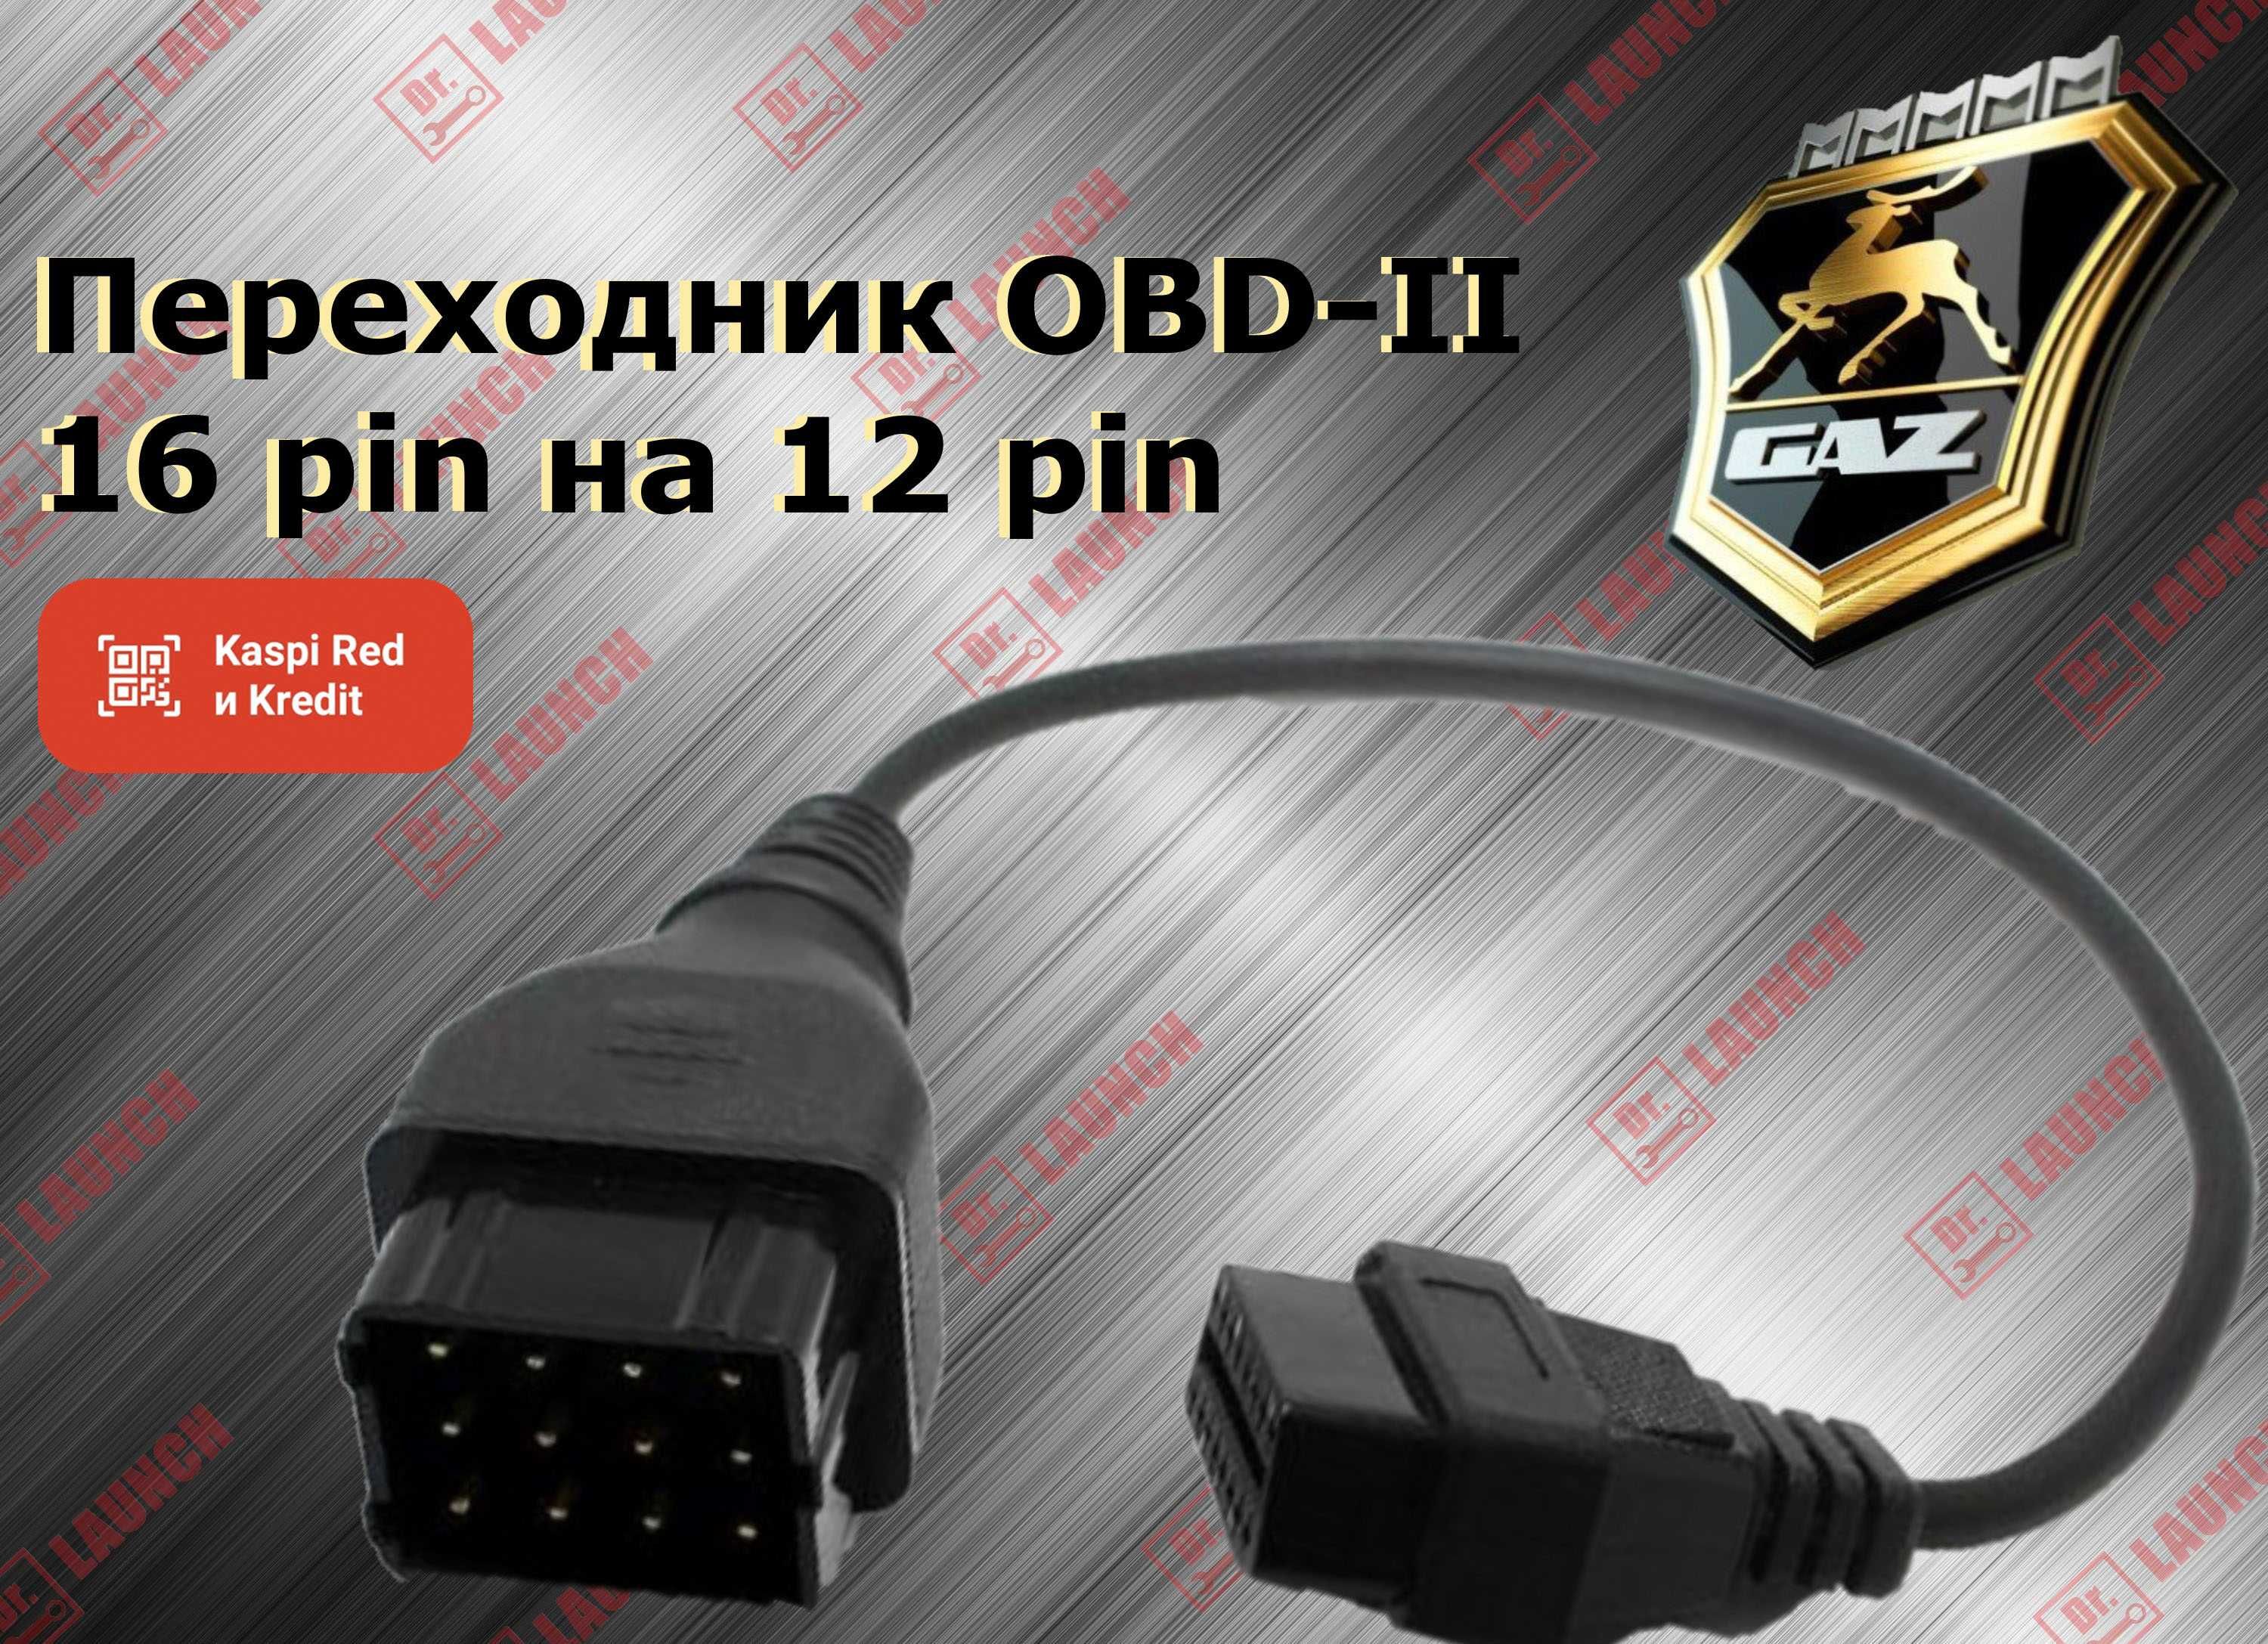 Переходник OBD-II 16 pin Gas газ УАЗ Газель Соболь, новый гарантия